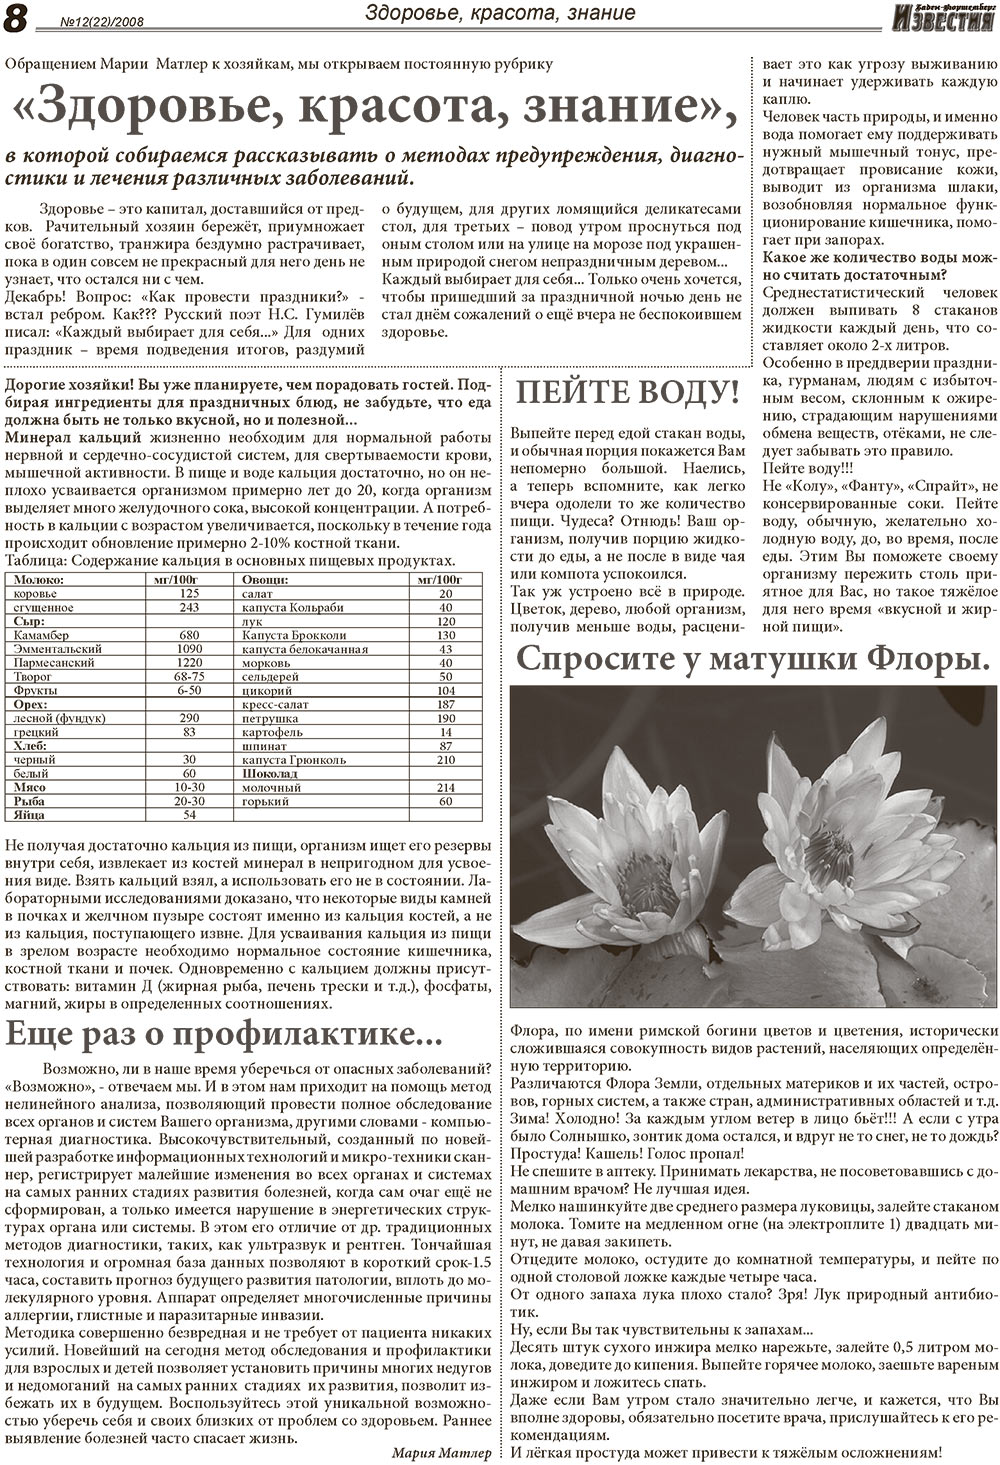 Известия BW, газета. 2008 №12 стр.8